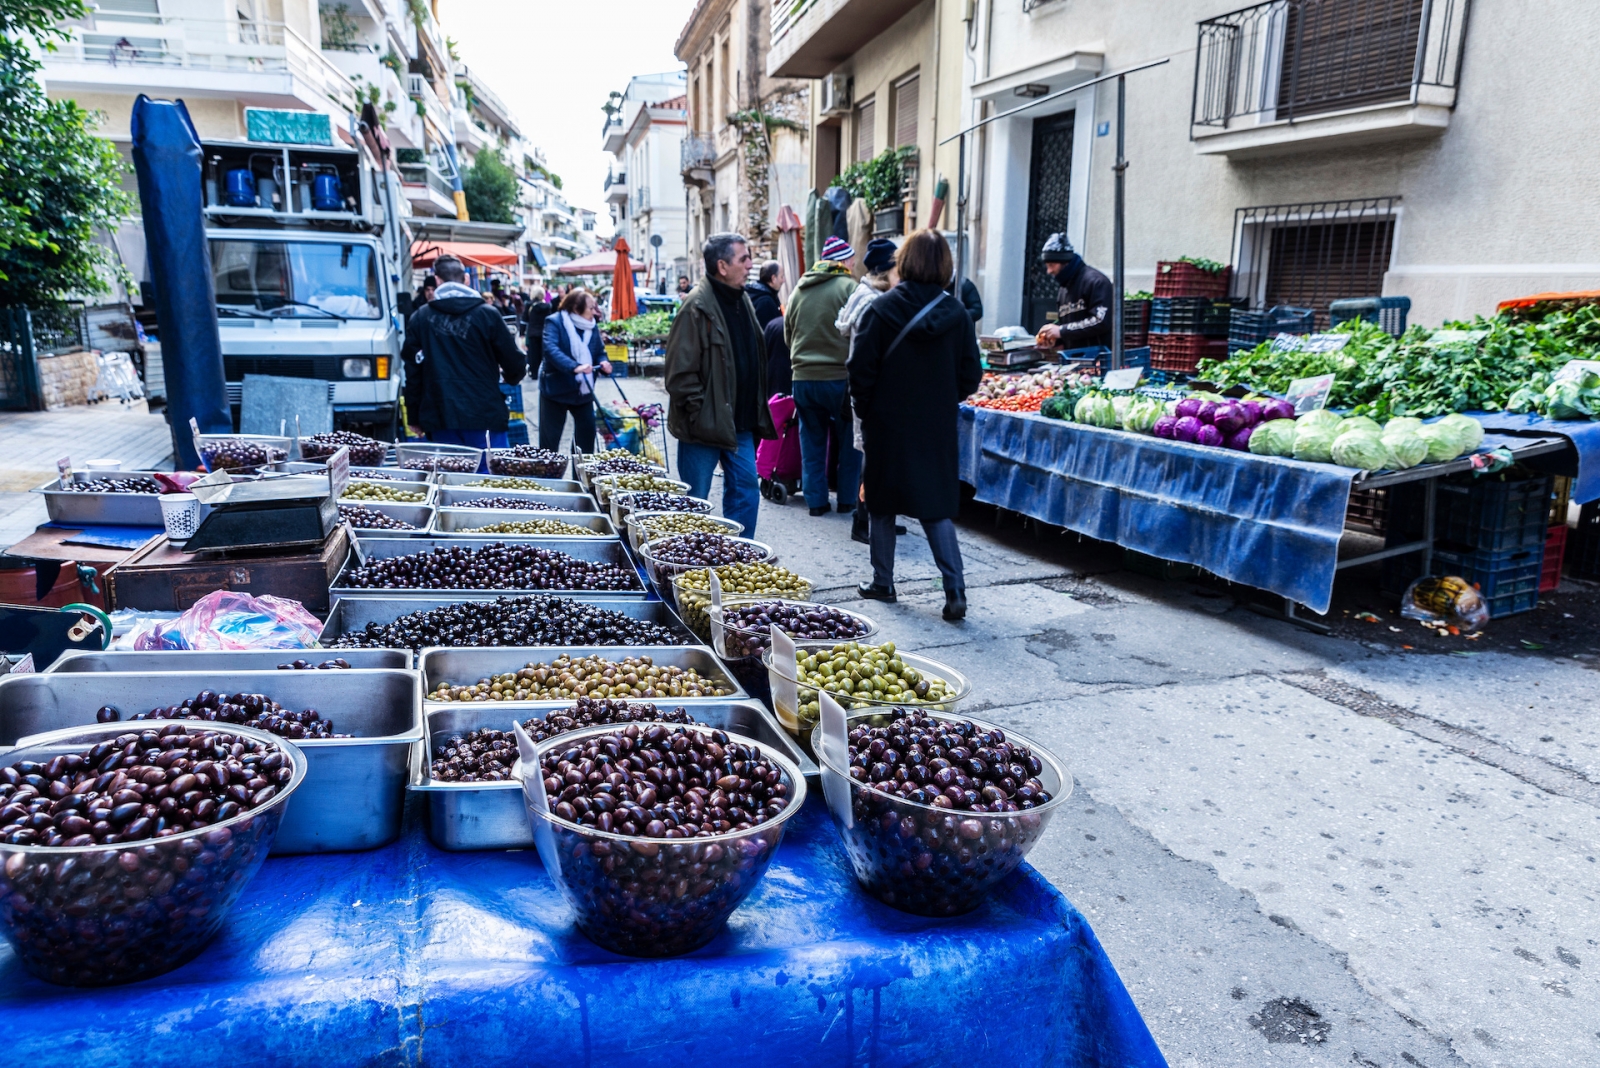 Marché fermier dans une rue d'Athènes, Grèce